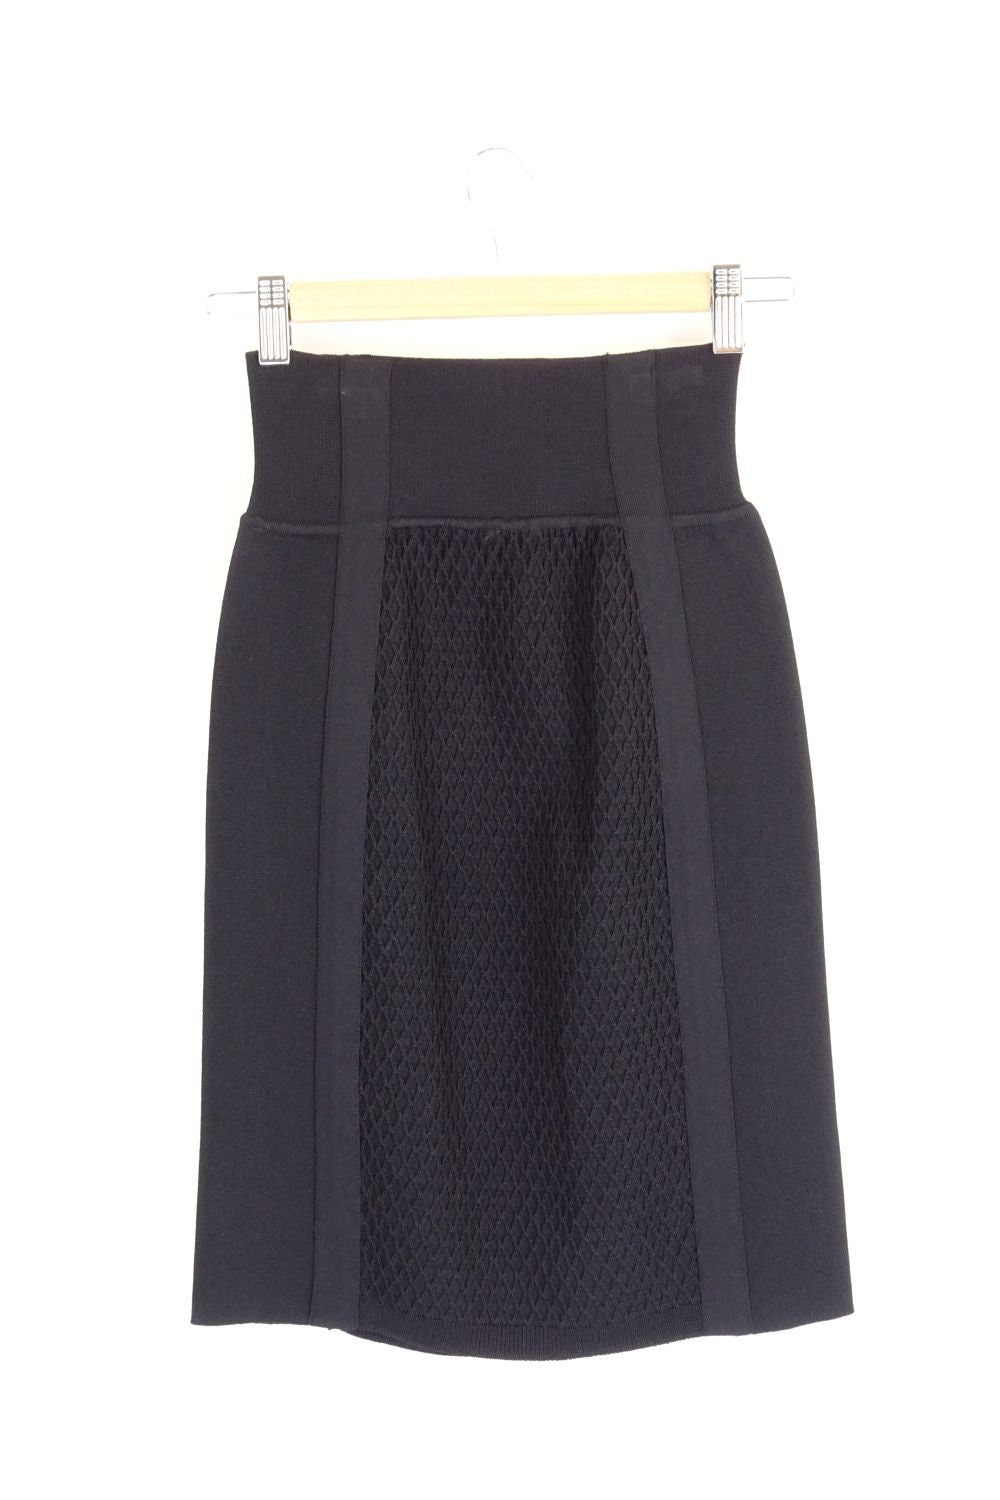 Intarsia Black Knit Skirt XS